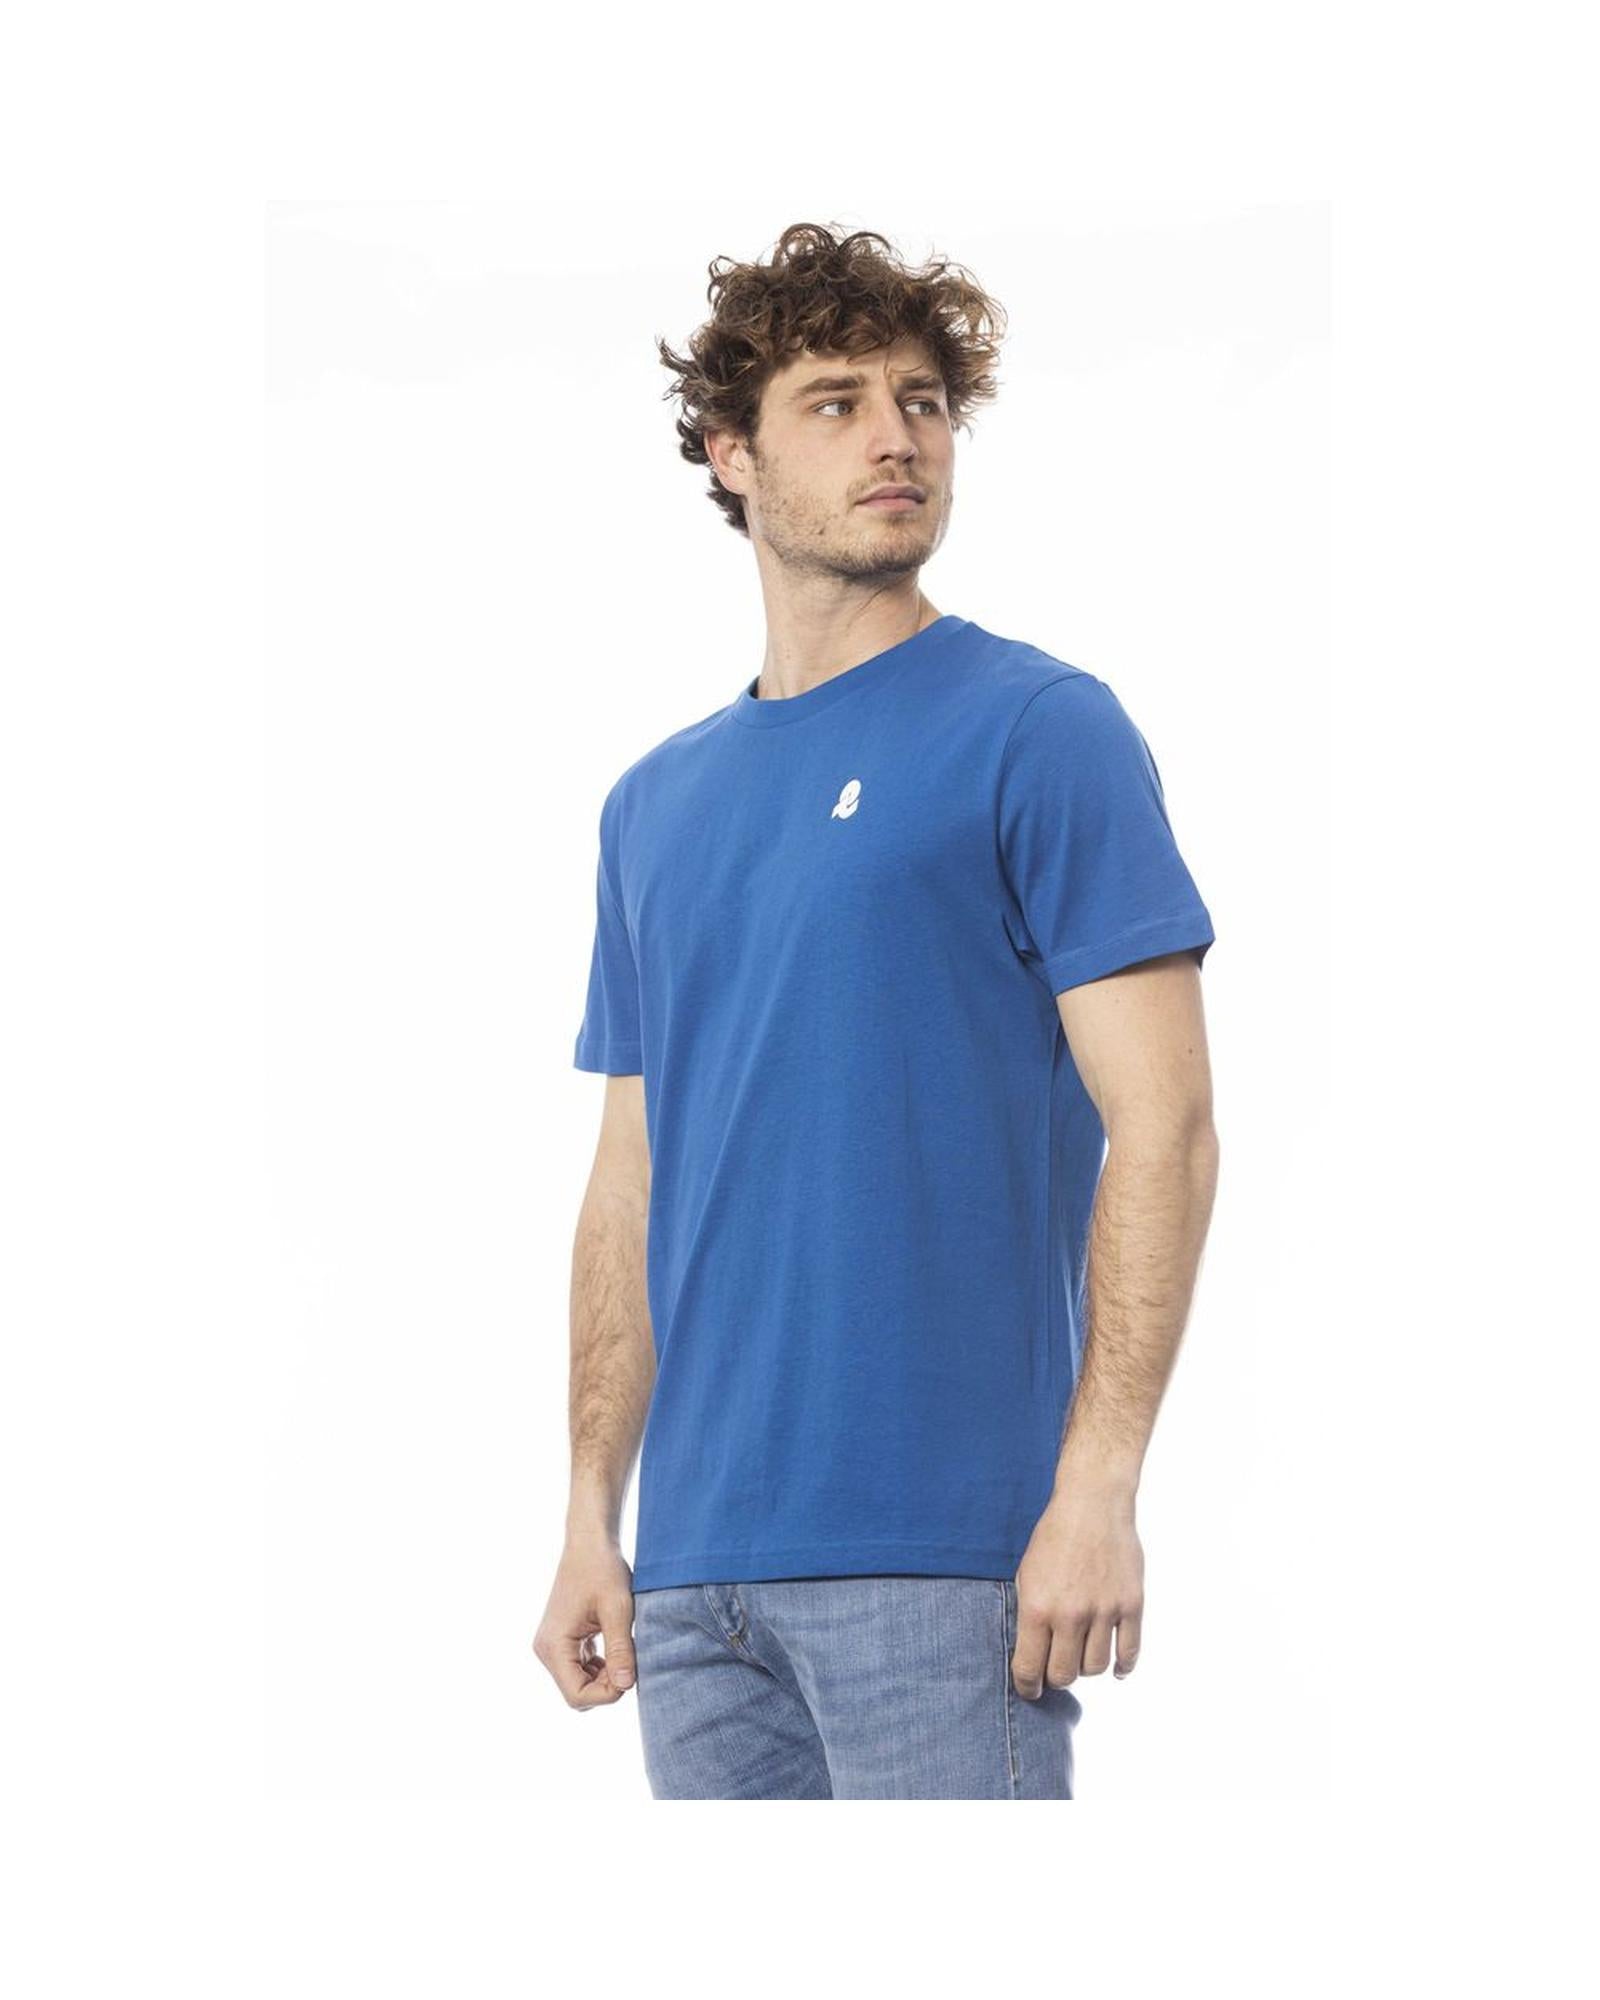 Men's Blue Cotton T-Shirt - M